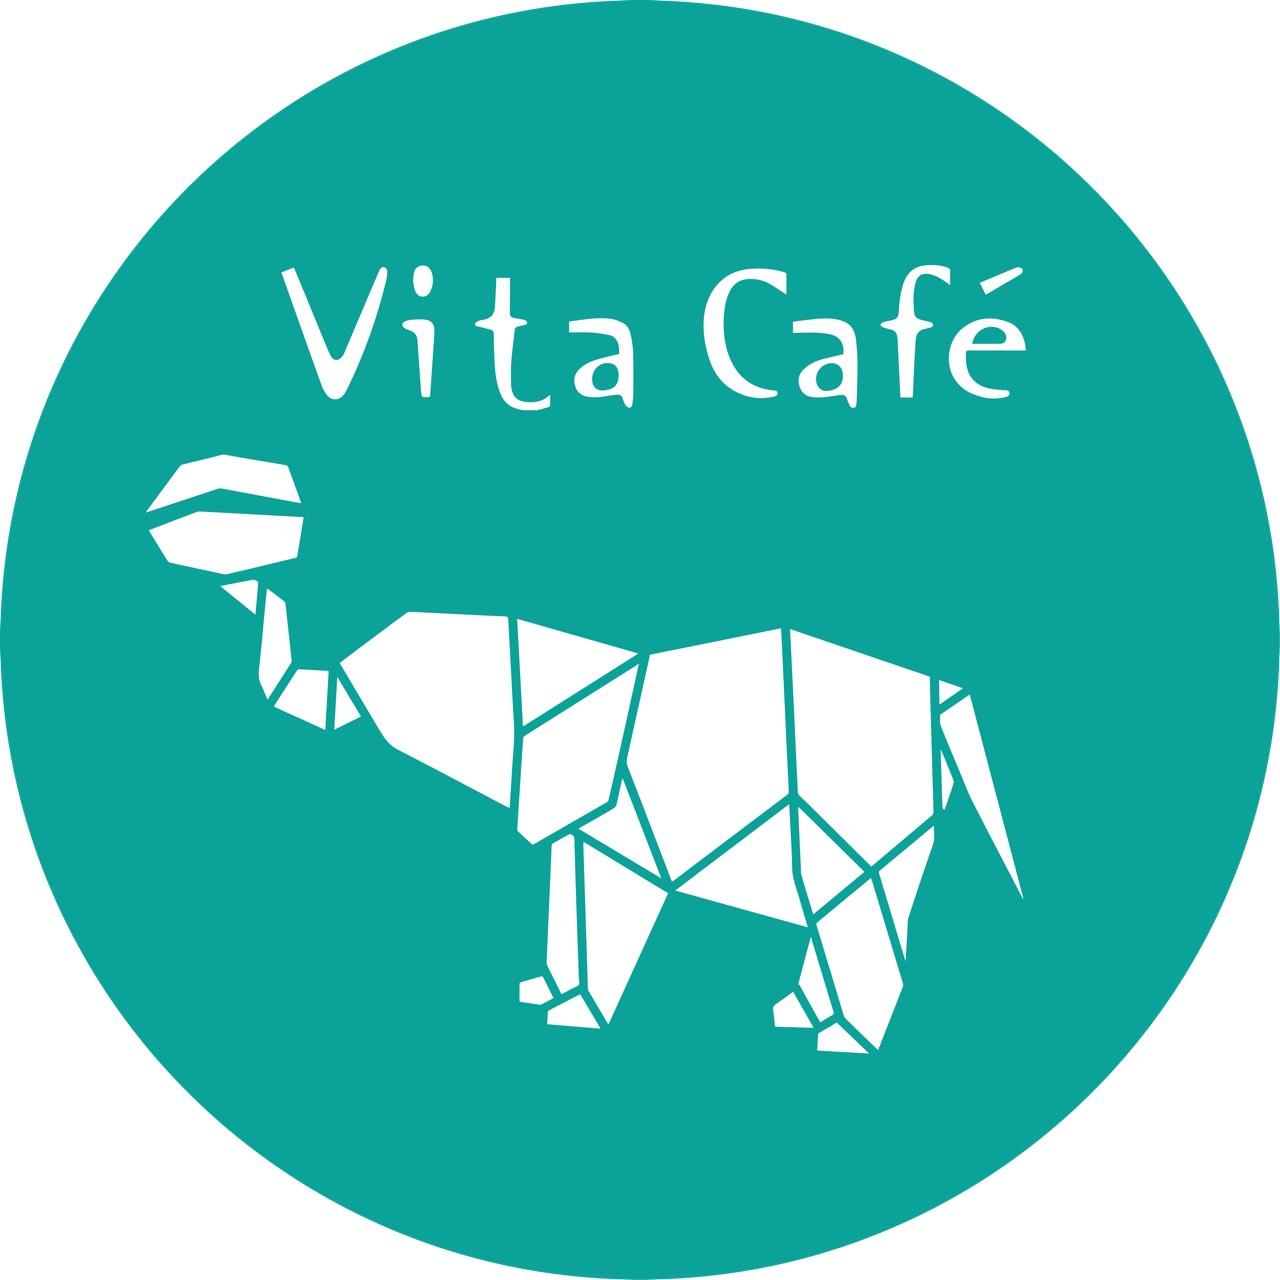 VitaCafe智能雲端烘焙